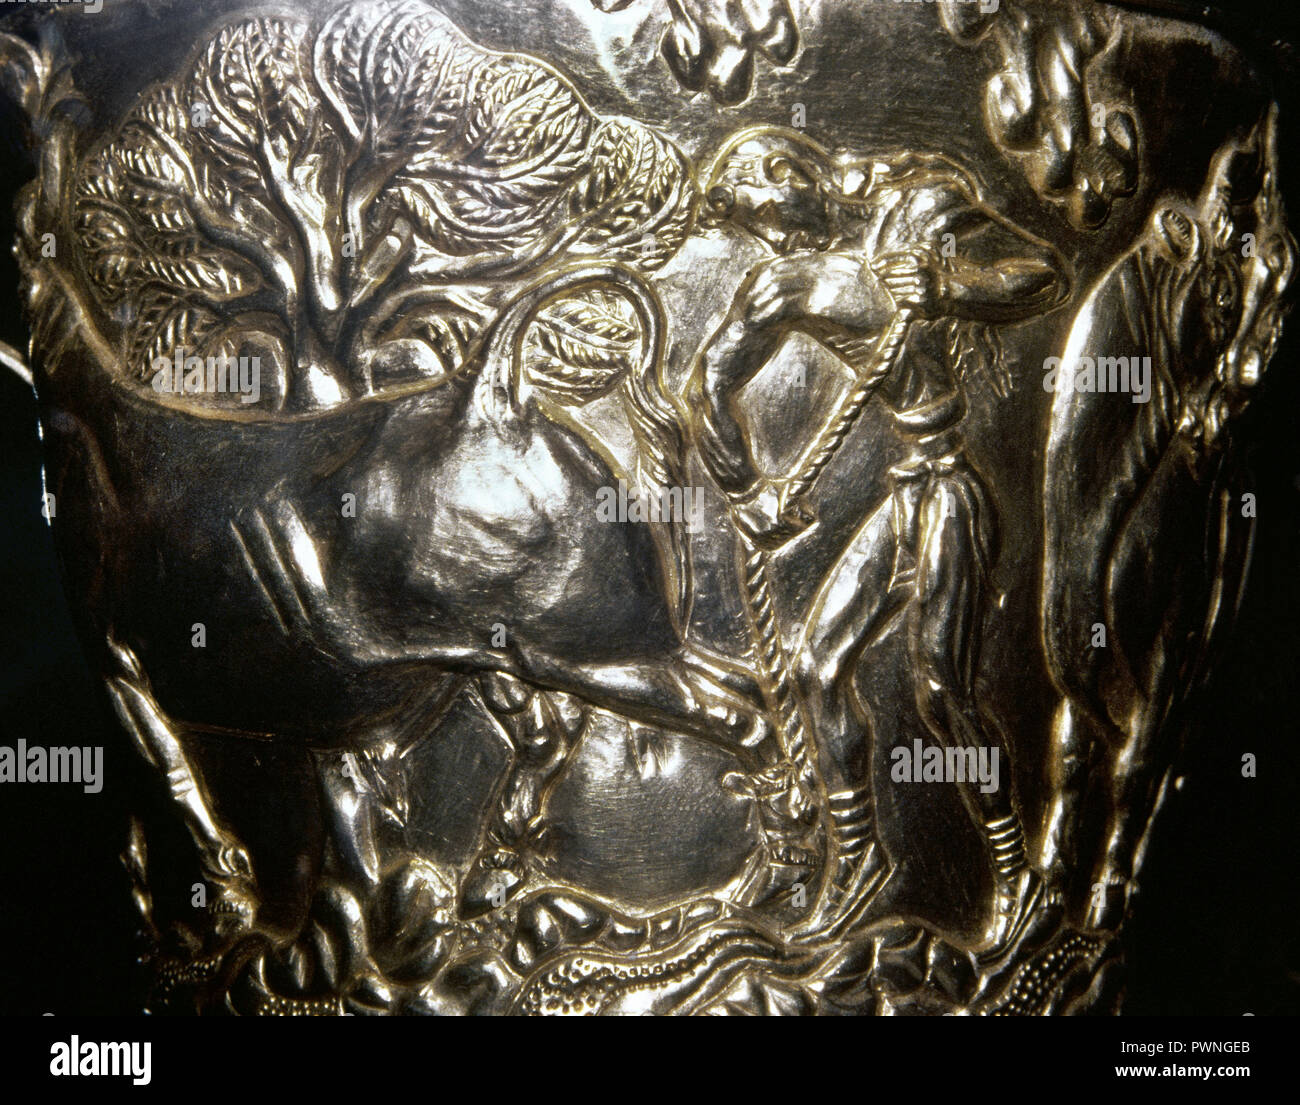 Vafio Glas. Minoische Stil, 1500-1450 v. Chr., zeigen einen Stier von einem Mann gebunden. Geprägtes Gold. Aus dem Grab des Vafio, in der Nähe von Sparta (Lakonien). Archäologisches Nationalmuseum Athen, Griechenland. Stockfoto